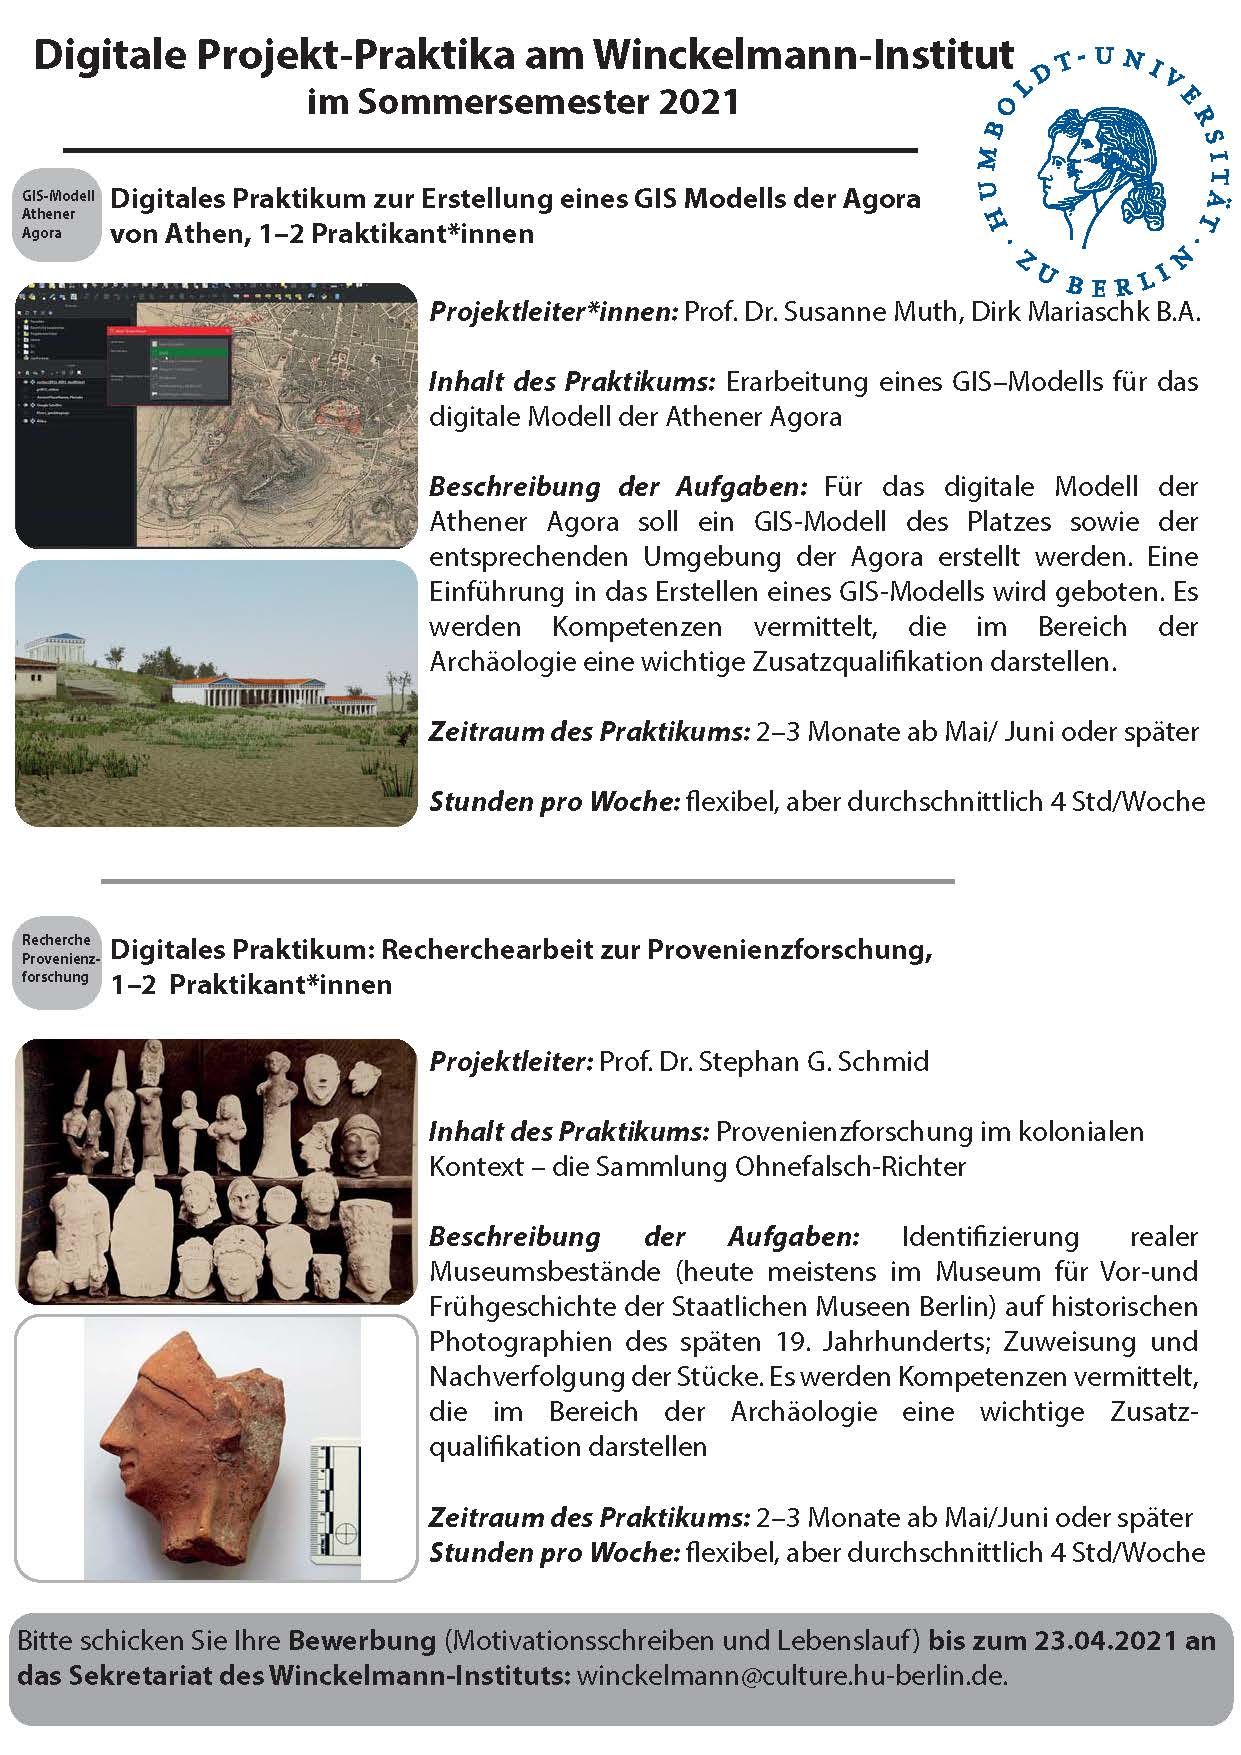 Ausschreibung_Digitale Projekt-Praktika_Winckelmann-Institut_SoSe2021_Seite_5.jpg